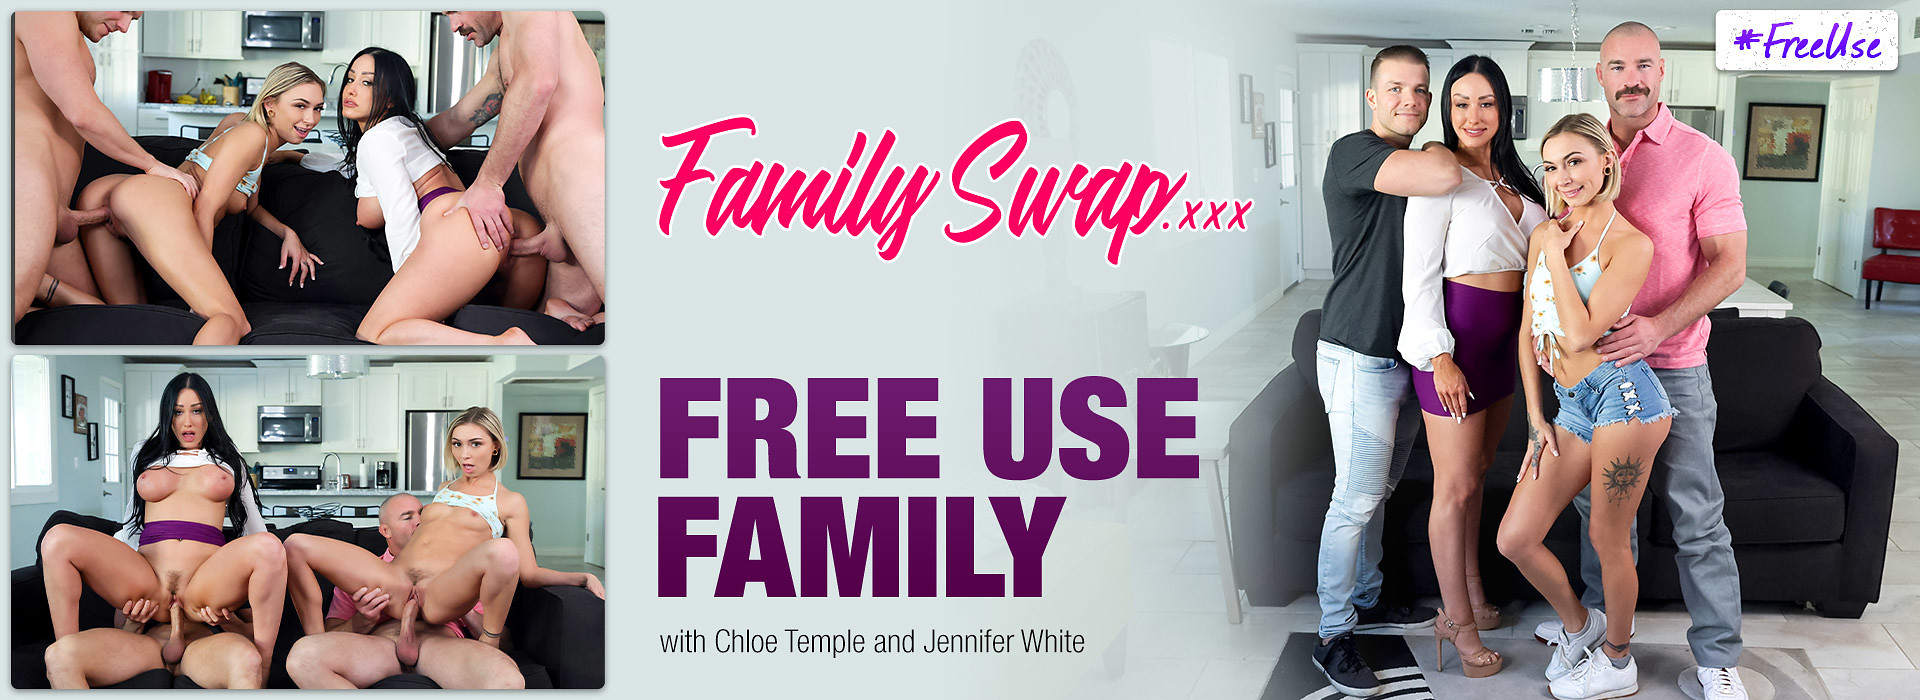 Free Use Family